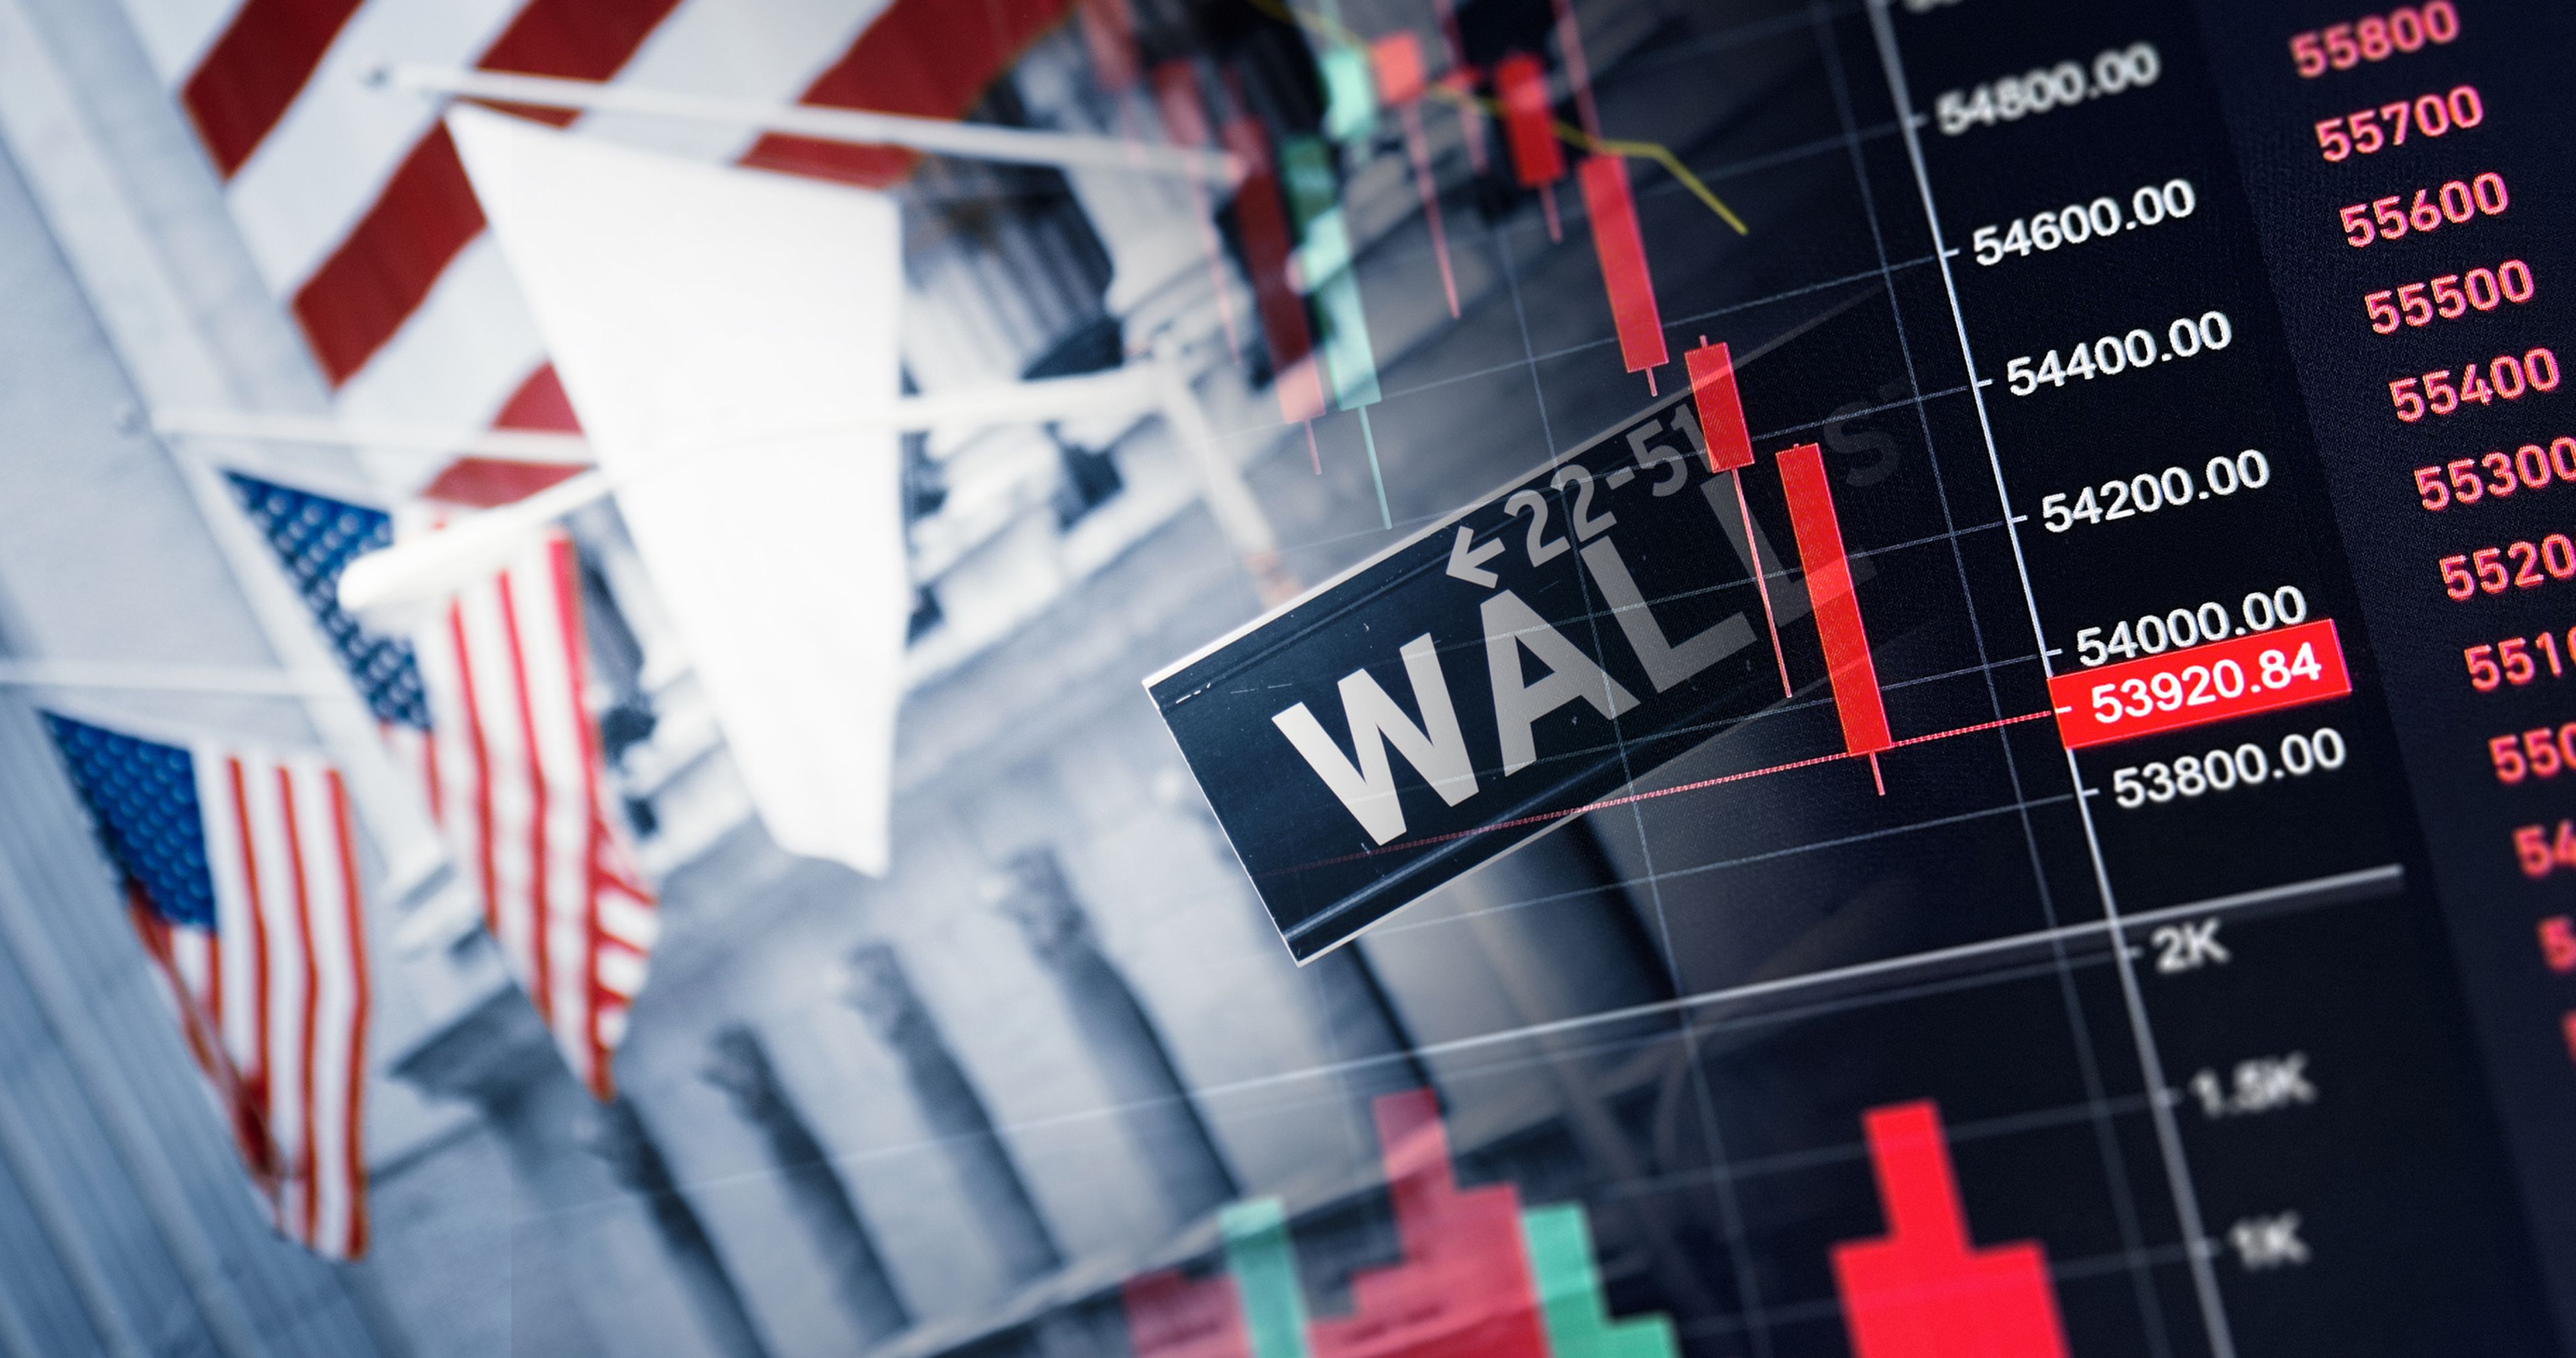 Montaje con la señal que indica Wall Street, banderas estadounidenses y un panel con valores.